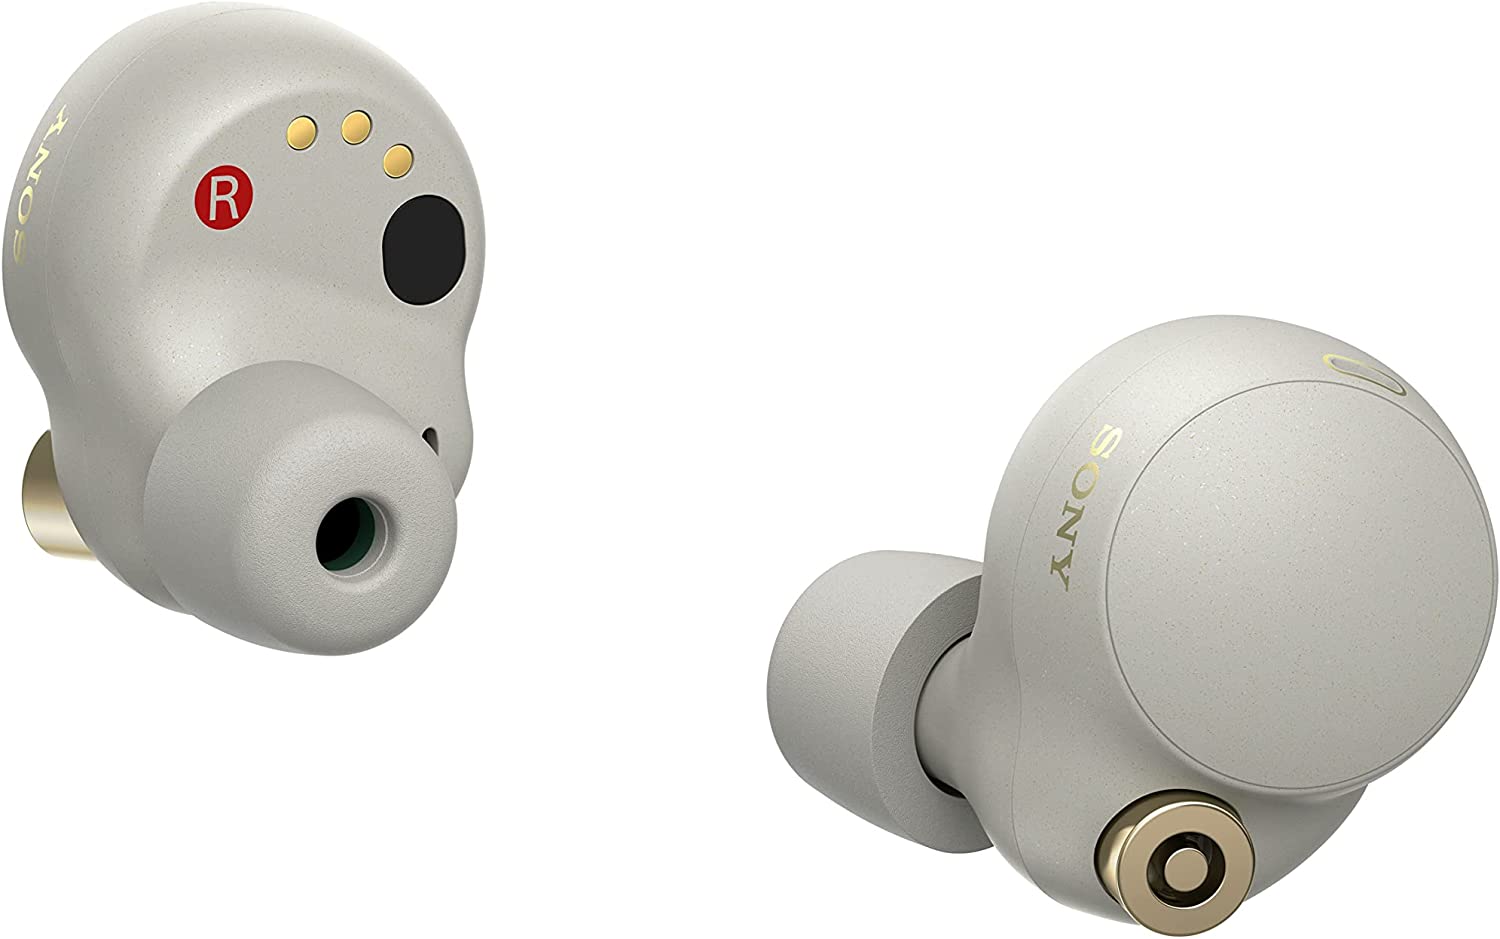 Sony WF-1000XM4 True Wireless Noise Cancelling In-Ear Headphones - Silver (New)